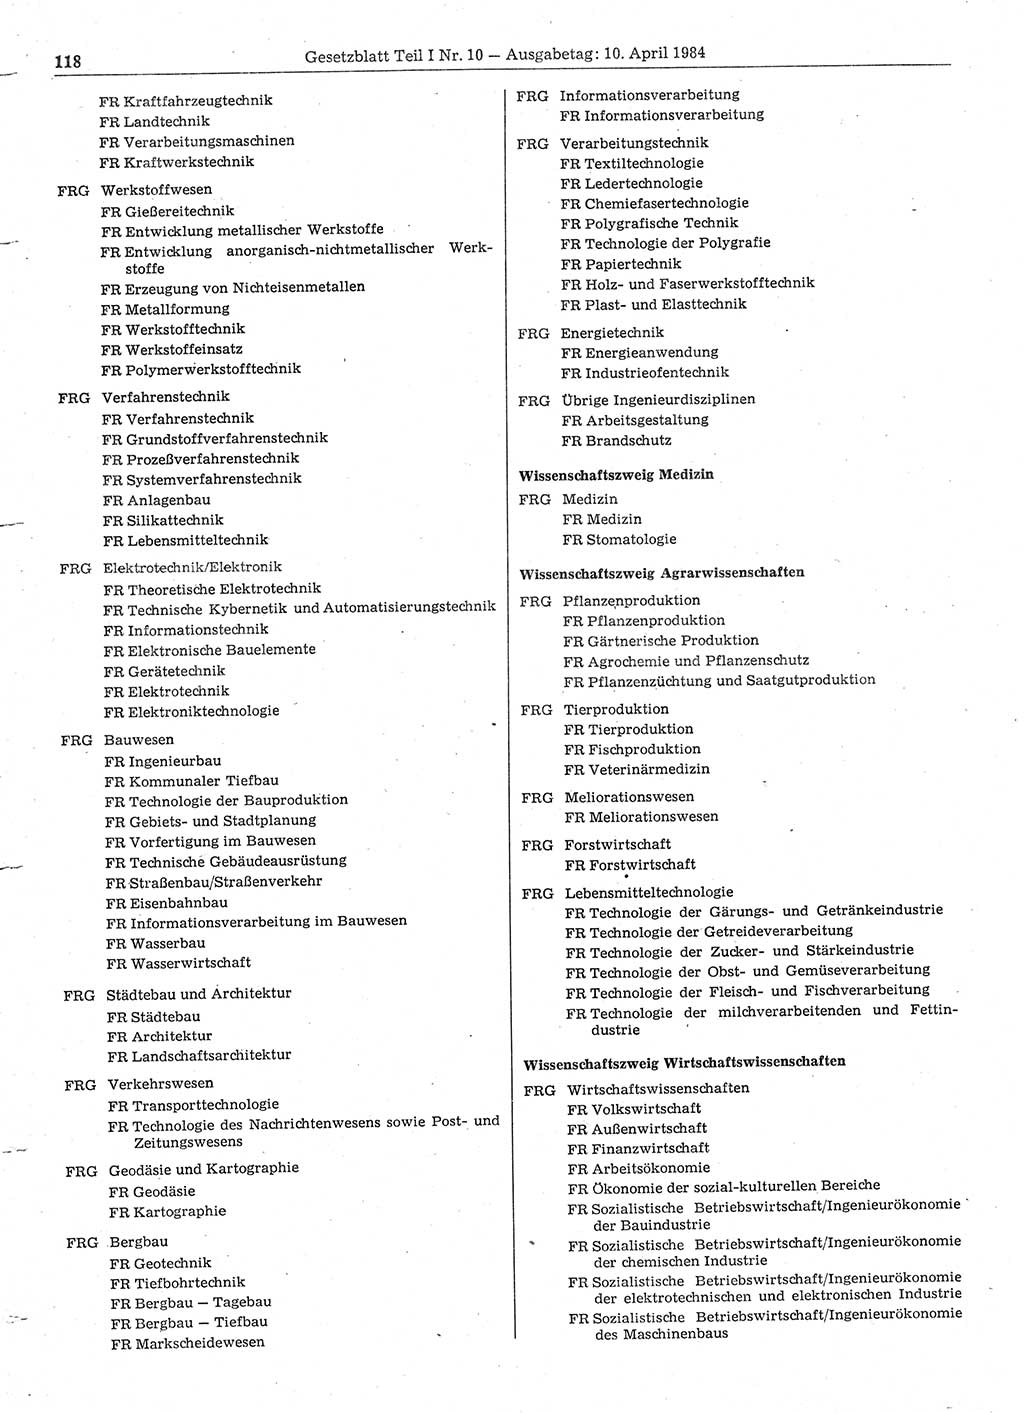 Gesetzblatt (GBl.) der Deutschen Demokratischen Republik (DDR) Teil Ⅰ 1984, Seite 118 (GBl. DDR Ⅰ 1984, S. 118)